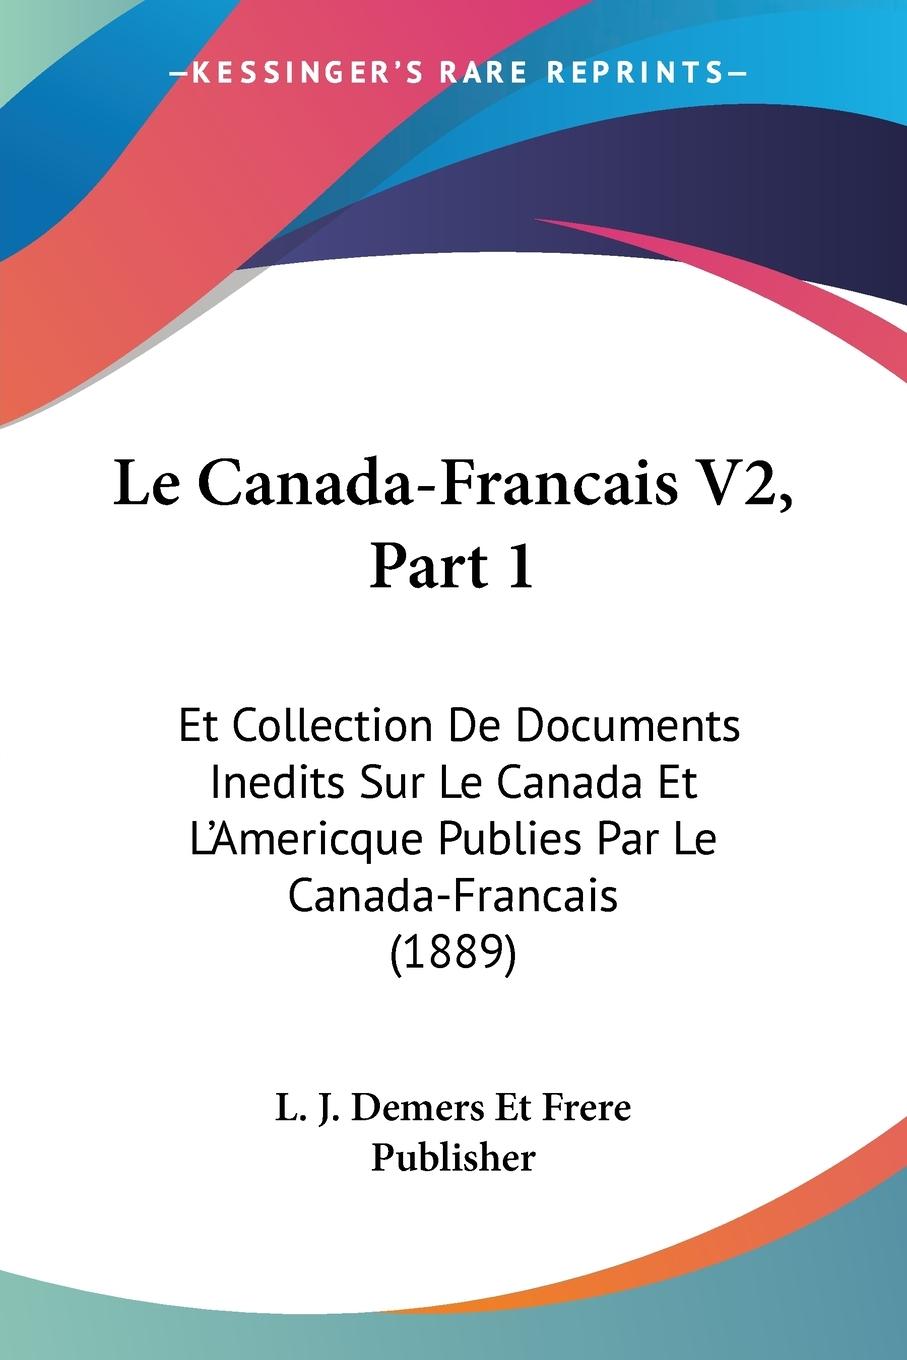 Le Canada-Francais V2, Part 1 - L. J. Demers Et Frere Publisher